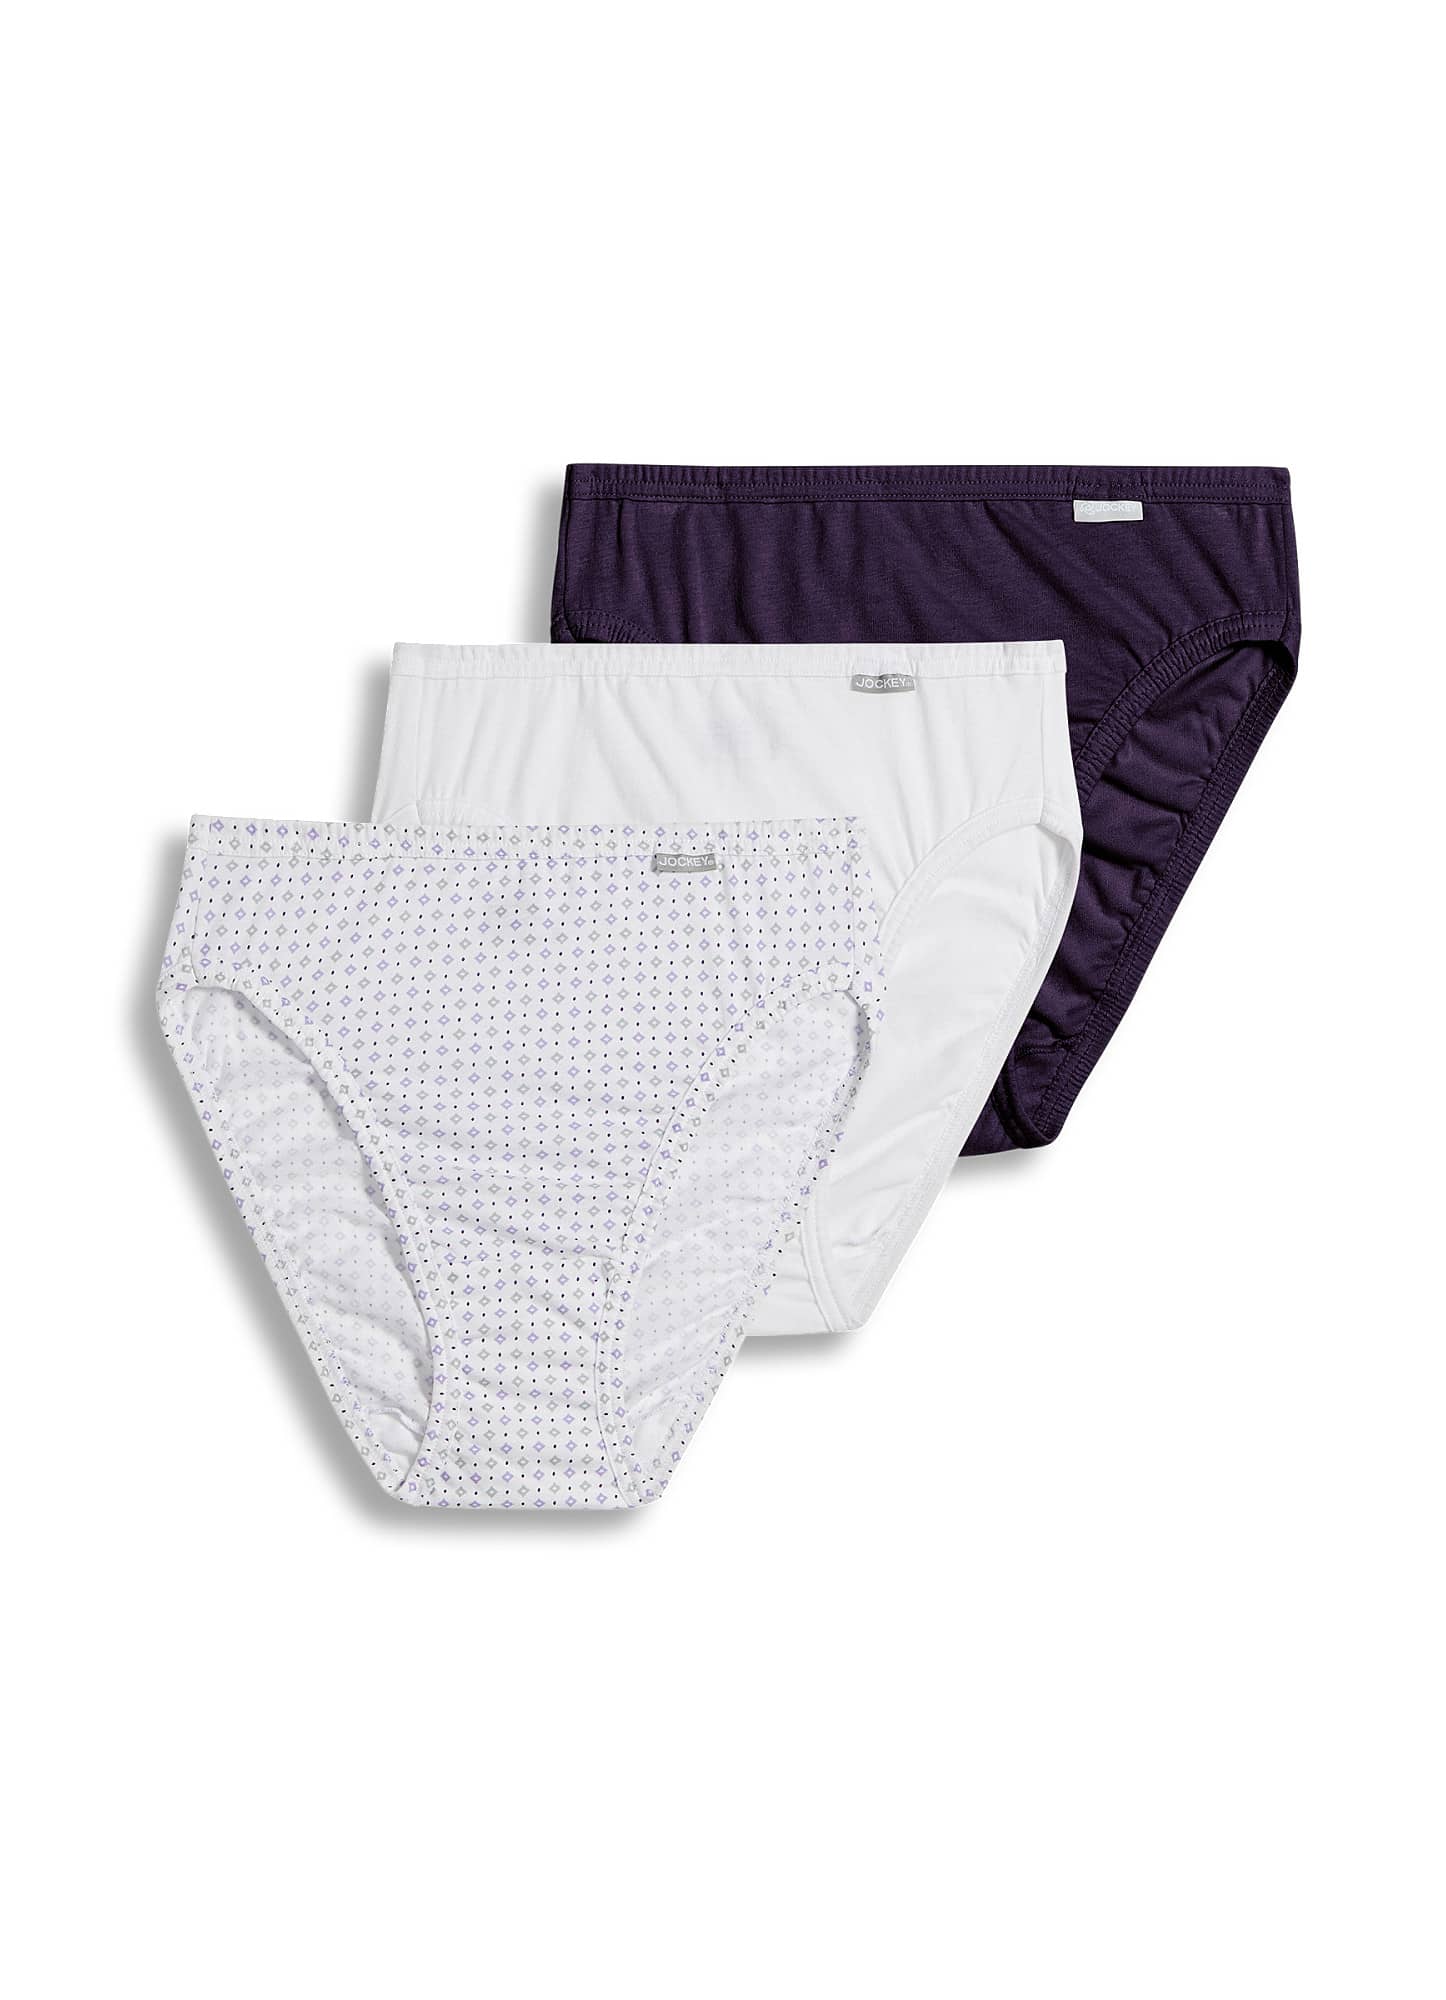 Jockey Women's Underwear Elance Brief - 3 Pack, Deep Blue Heather